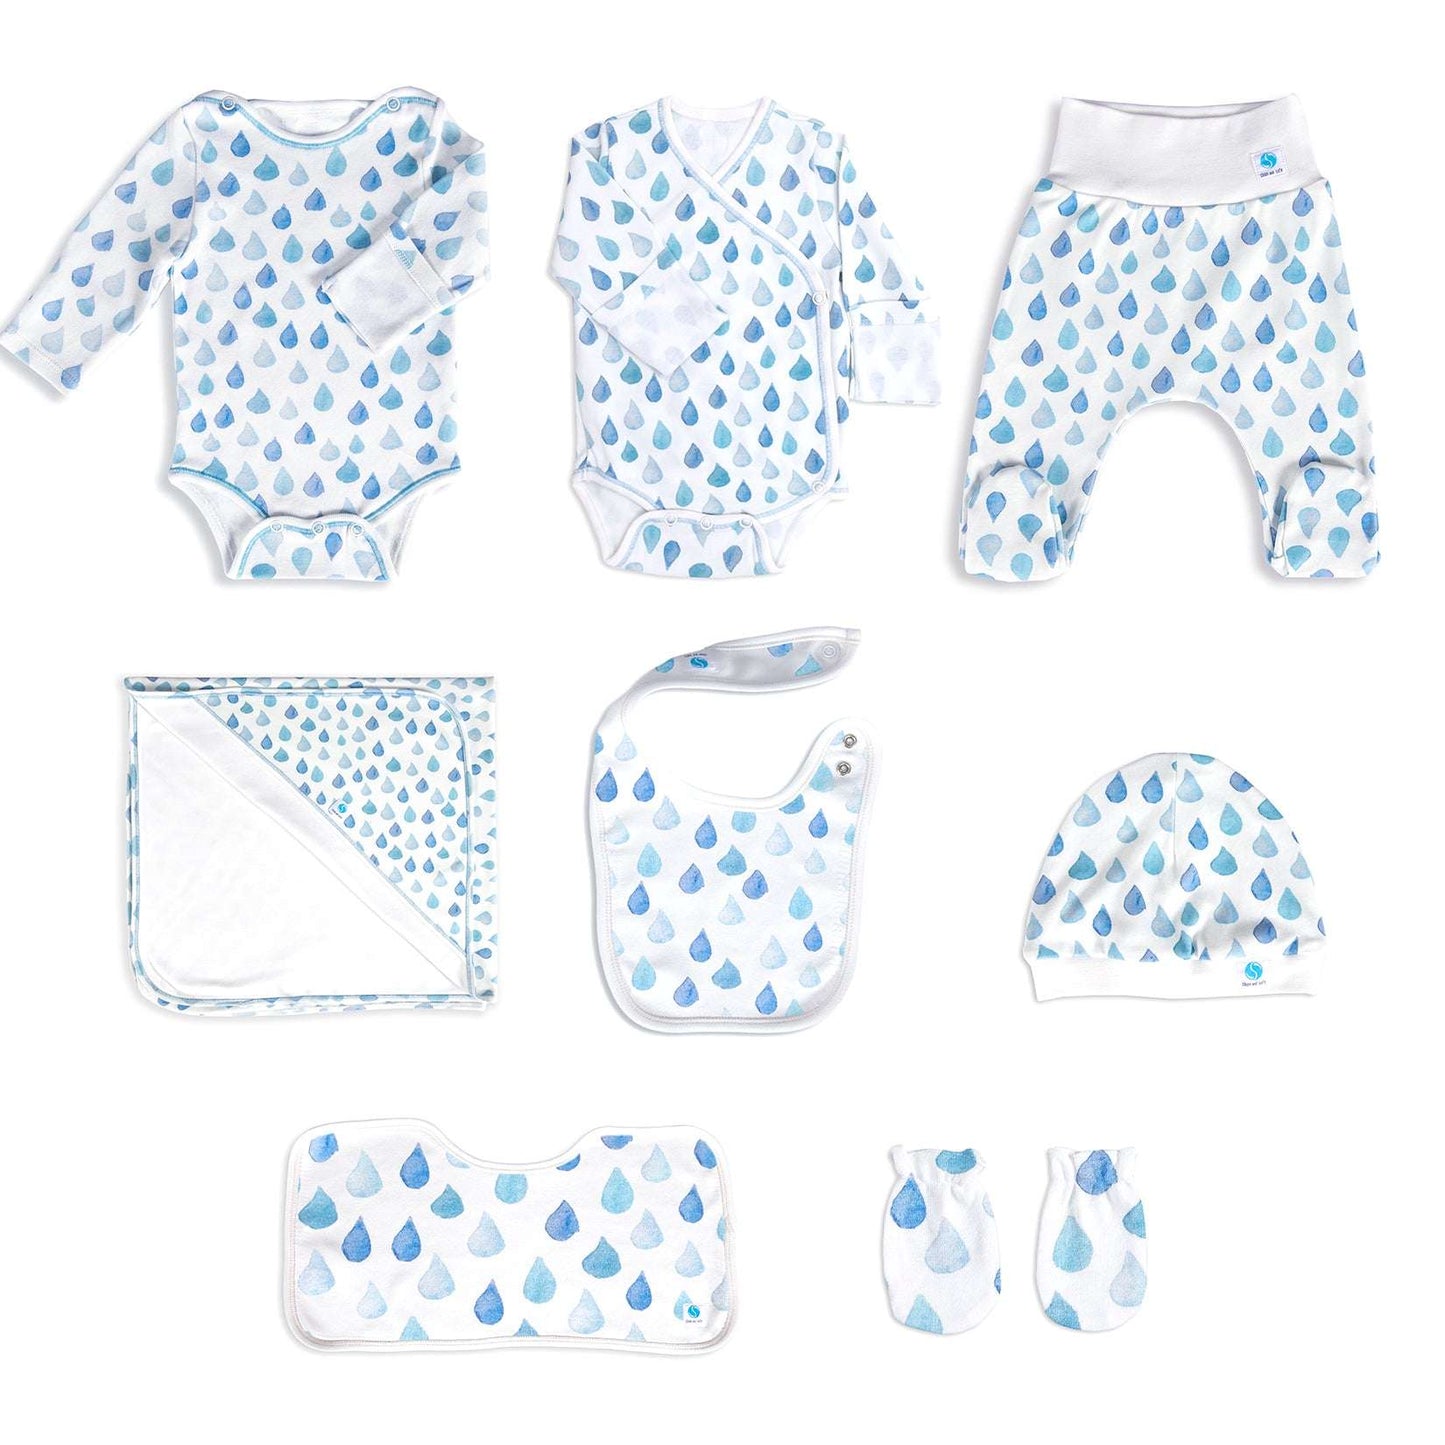 Full Hospital Set (8 pcs) of Organic Baby Clothing